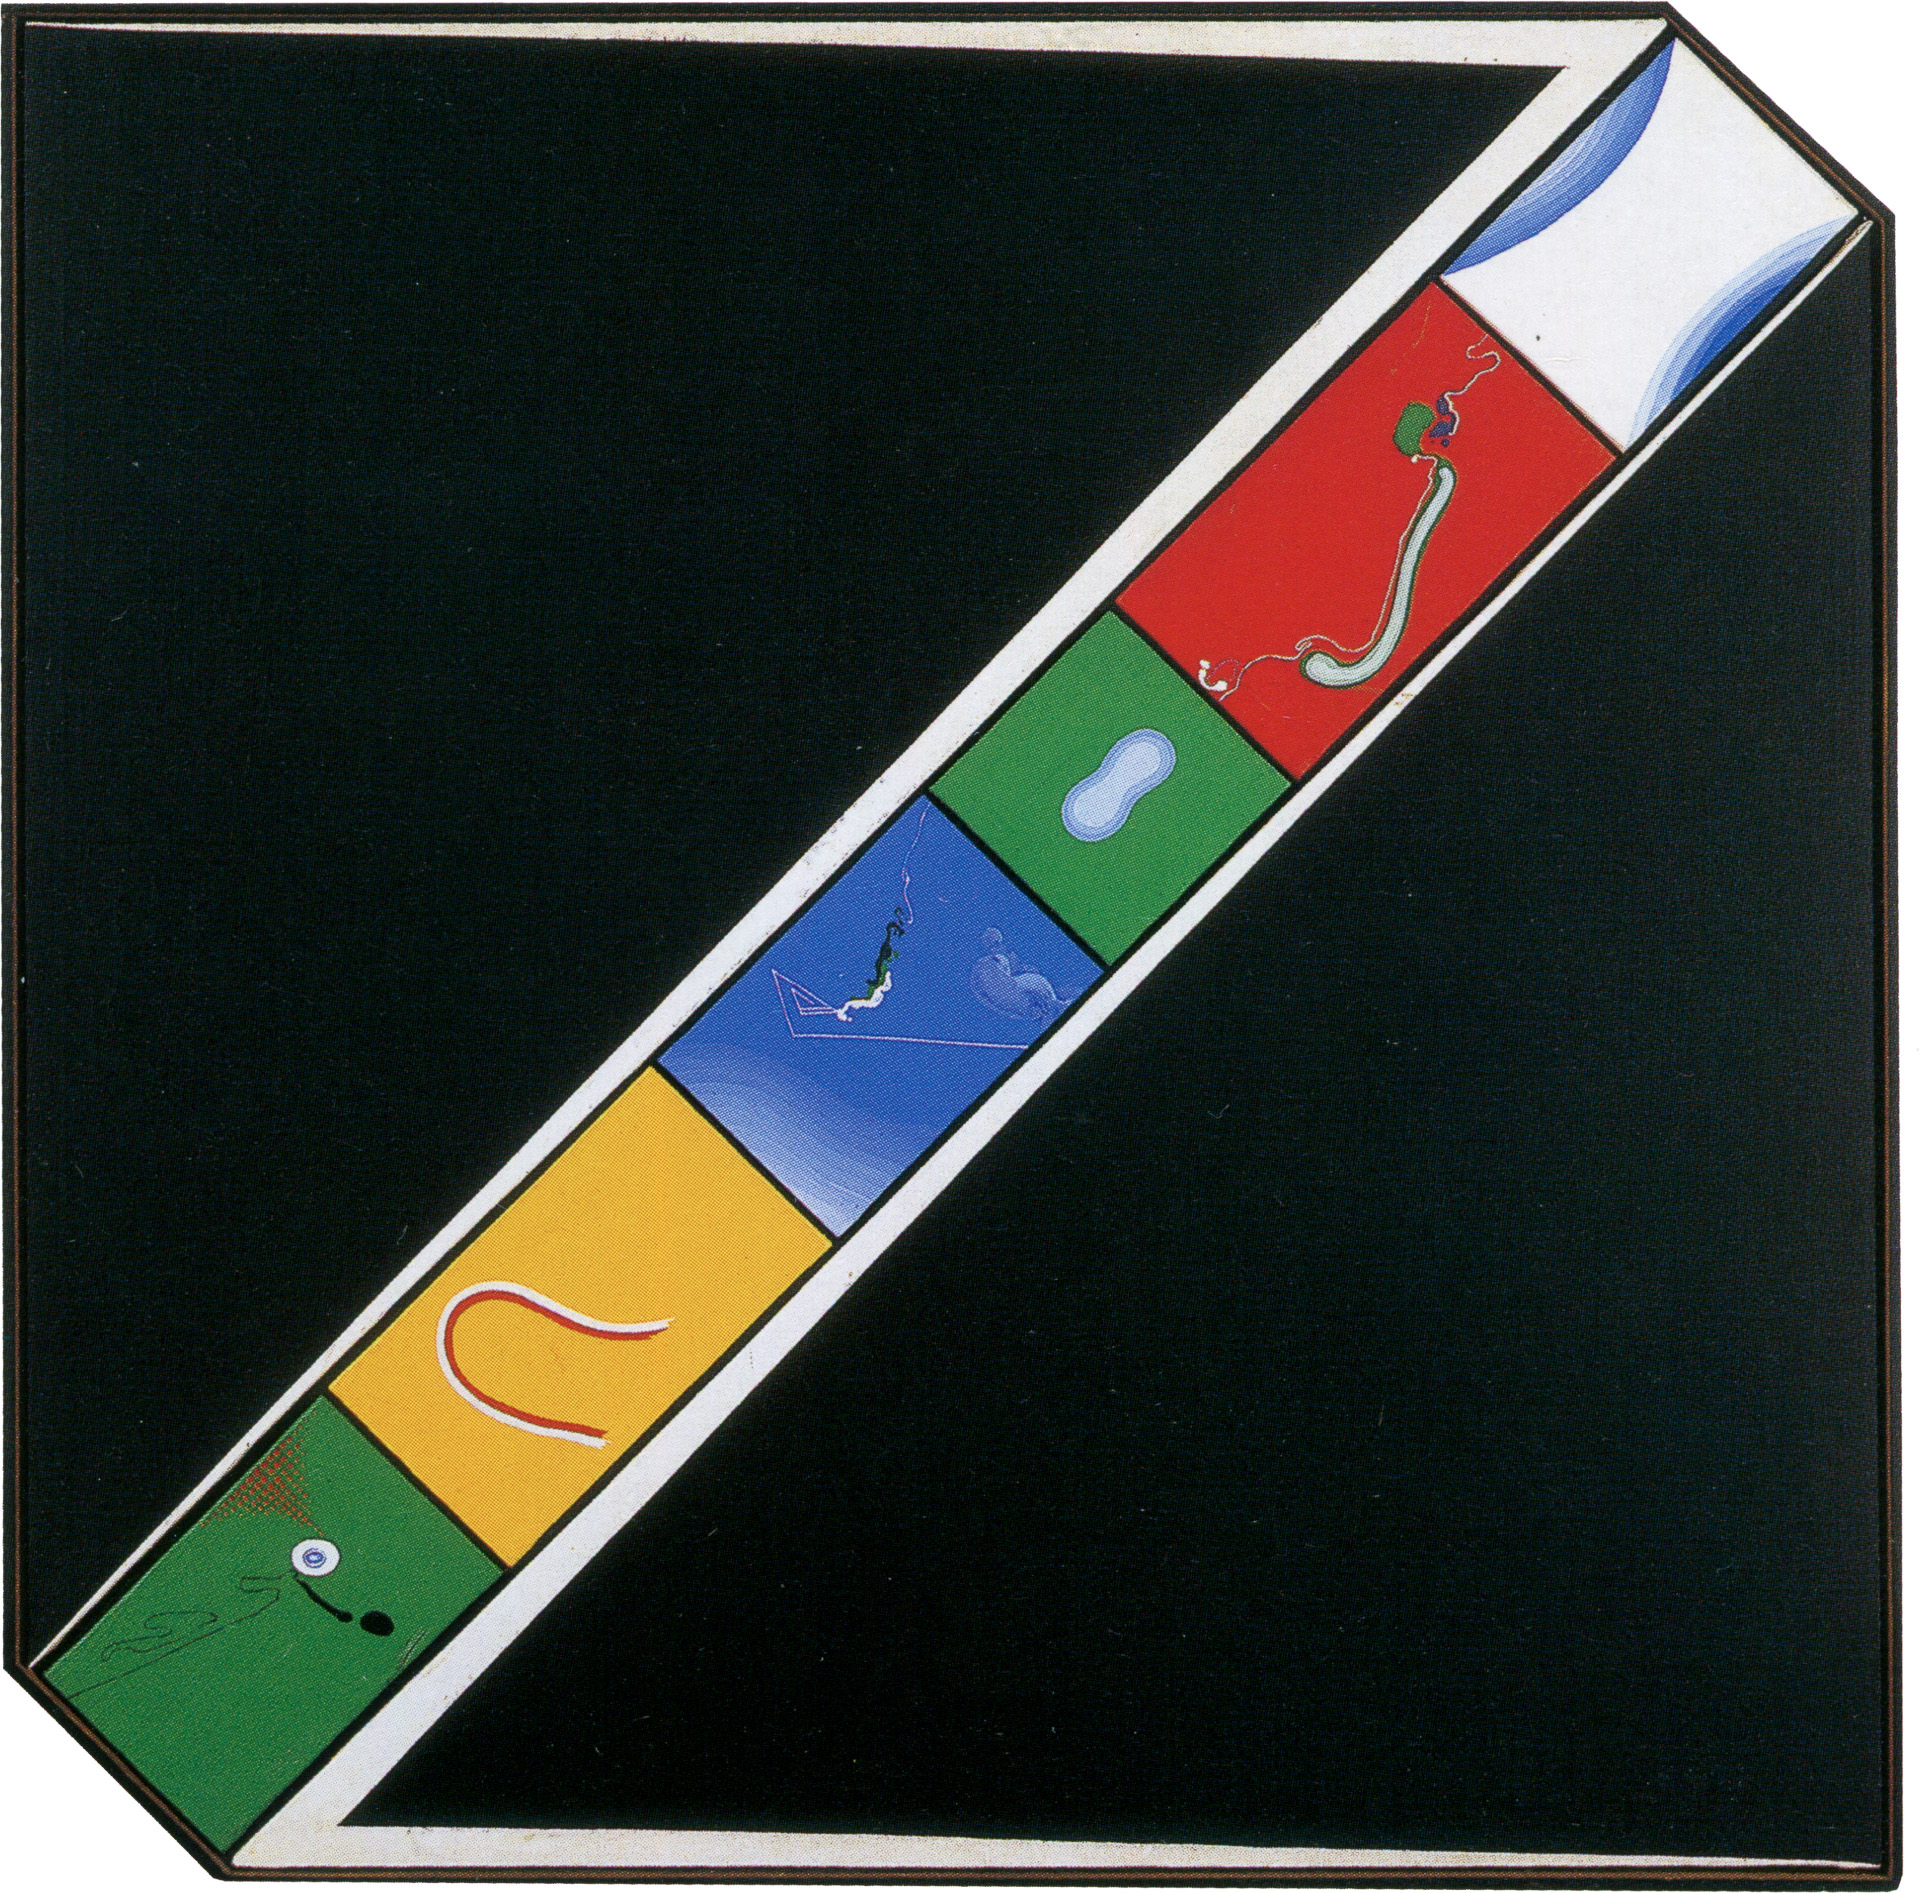 近藤竜男〈Untitled（65: N）〉, アクリル・カンヴァス, 84.7×84.3, 戦後美術の軌跡5（東京画廊）, 1965